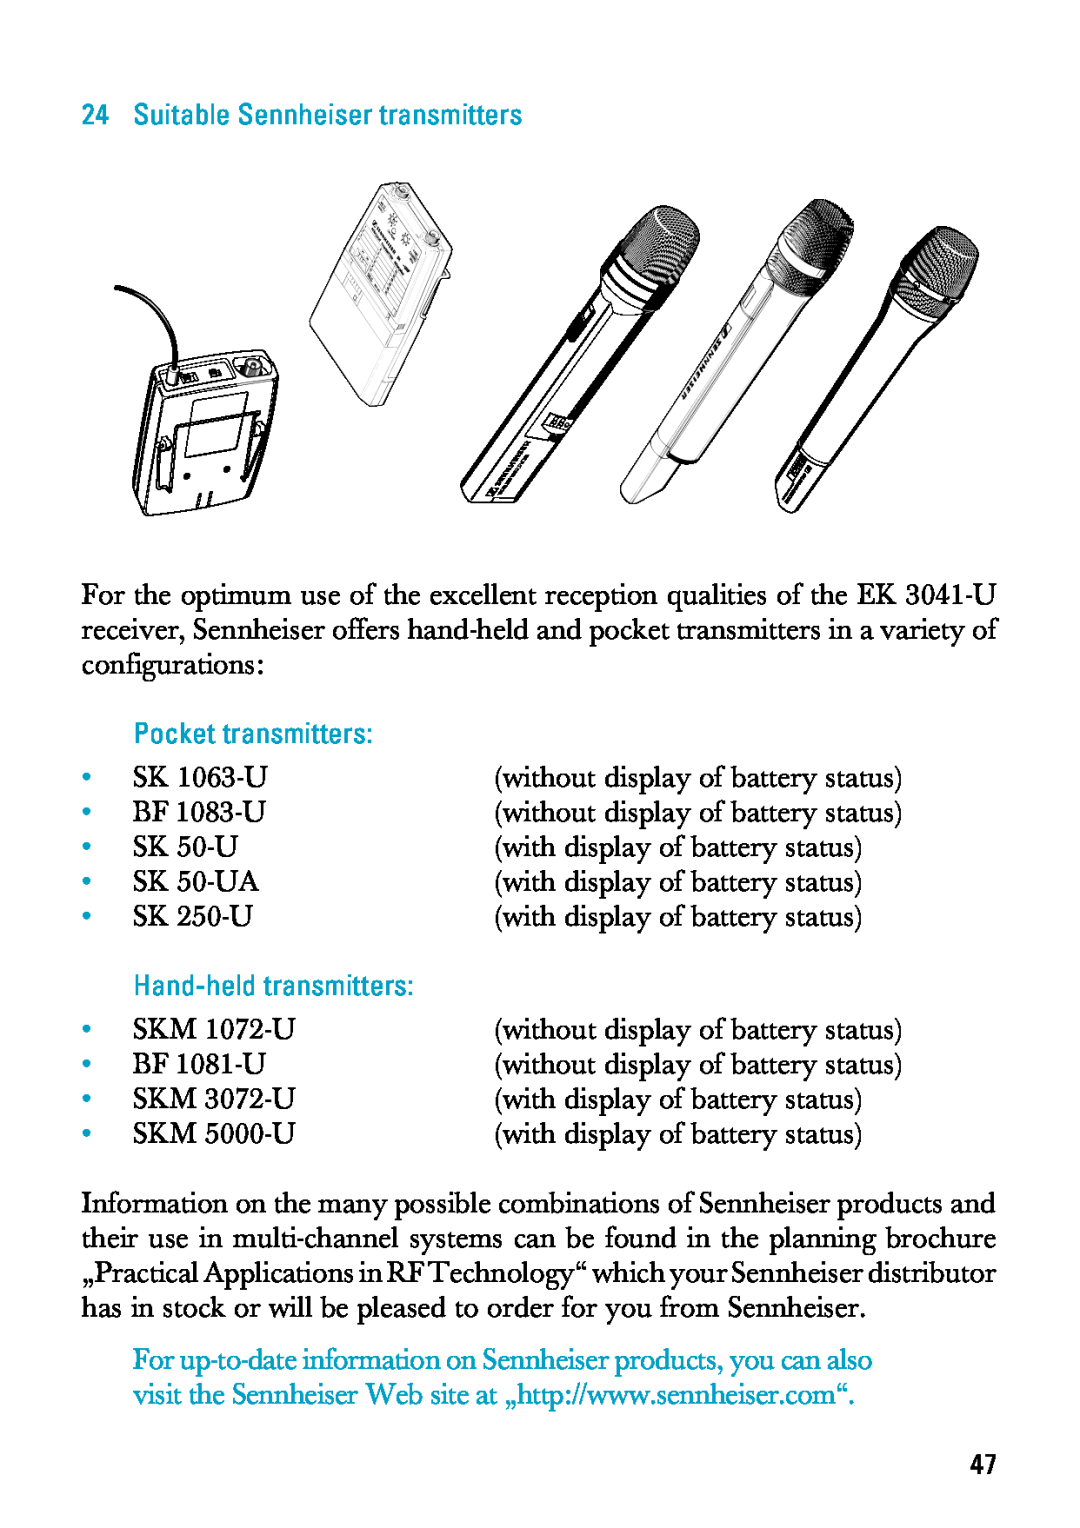 Sennheiser EK 3041-U manual Suitable Sennheiser transmitters, Pocket transmitters, Hand-heldtransmitters 